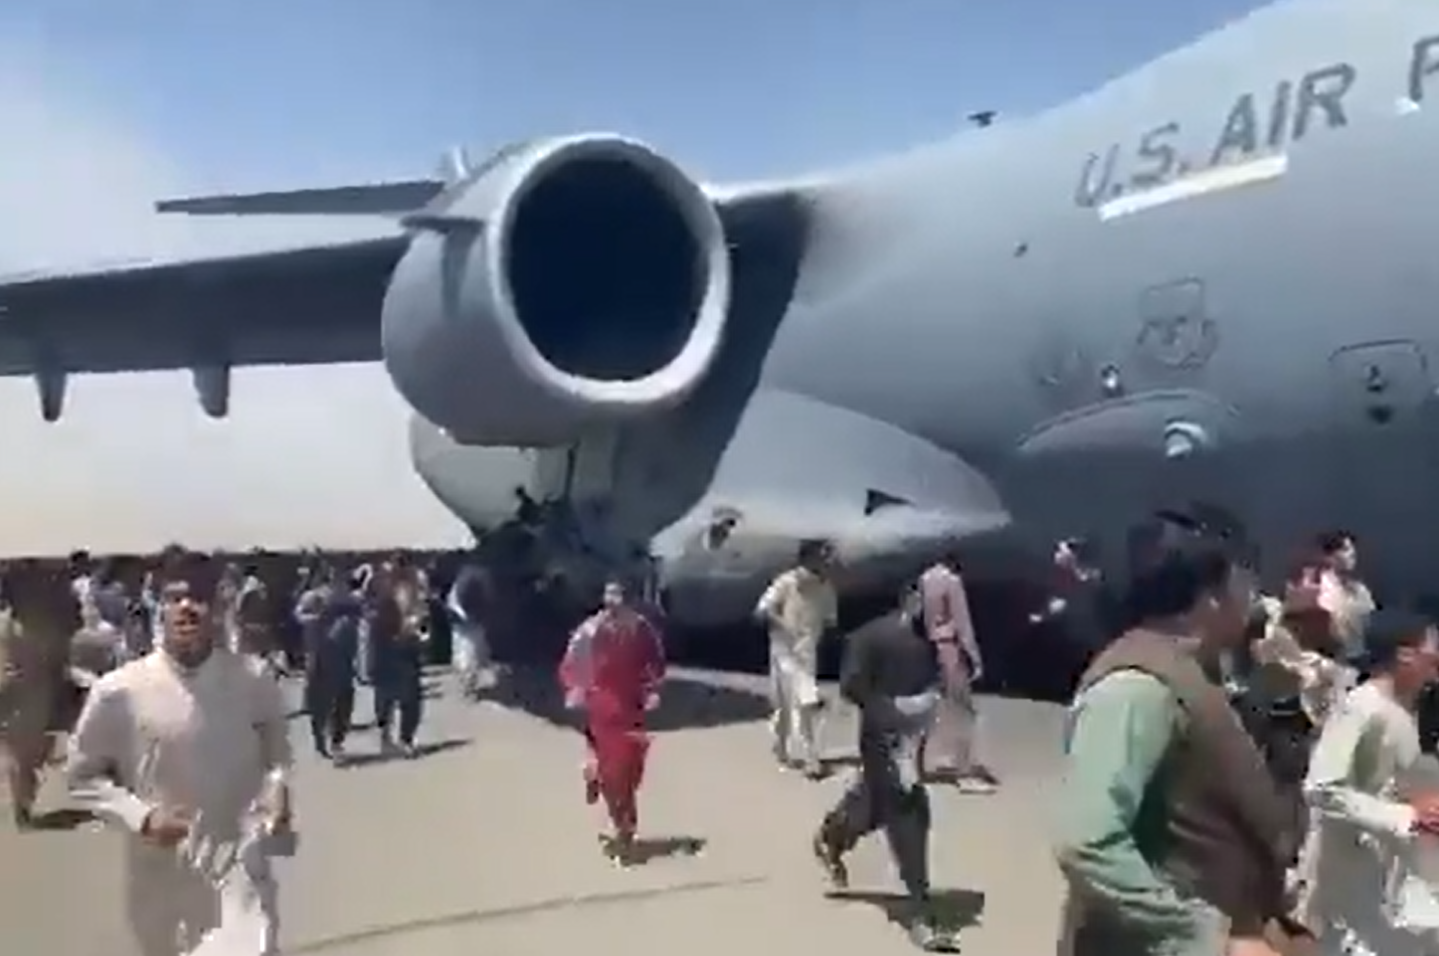 Afeganistão: vídeo mostra pessoas caindo de avião dos EUA ao tentarem fugir  de Cabul  Afeganistão: vídeo mostra pessoas caindo de avião dos EUA ao  tentarem fugir de Cabul Vídeos e relatos